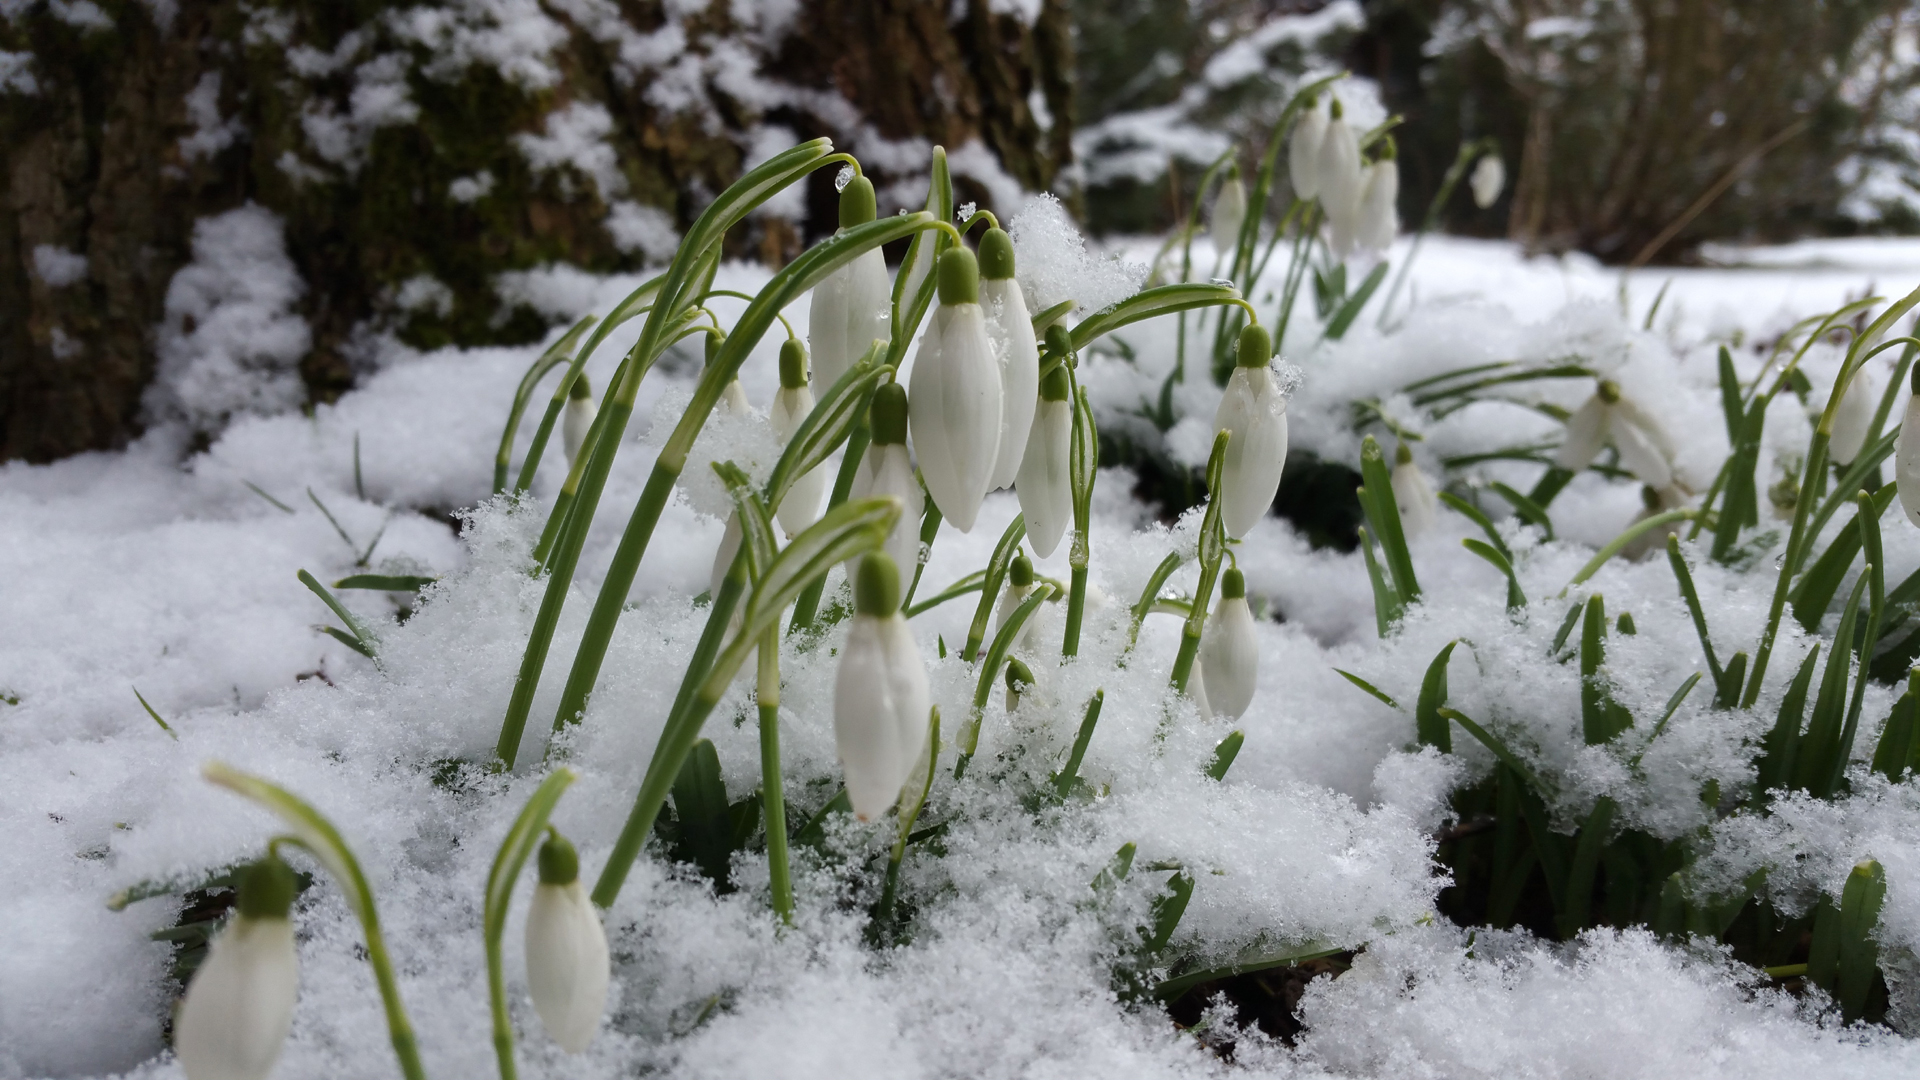 Fotostrecke Frühling Abbildung 01: Erste Schneeglöckchen ragen aus dem Schnee